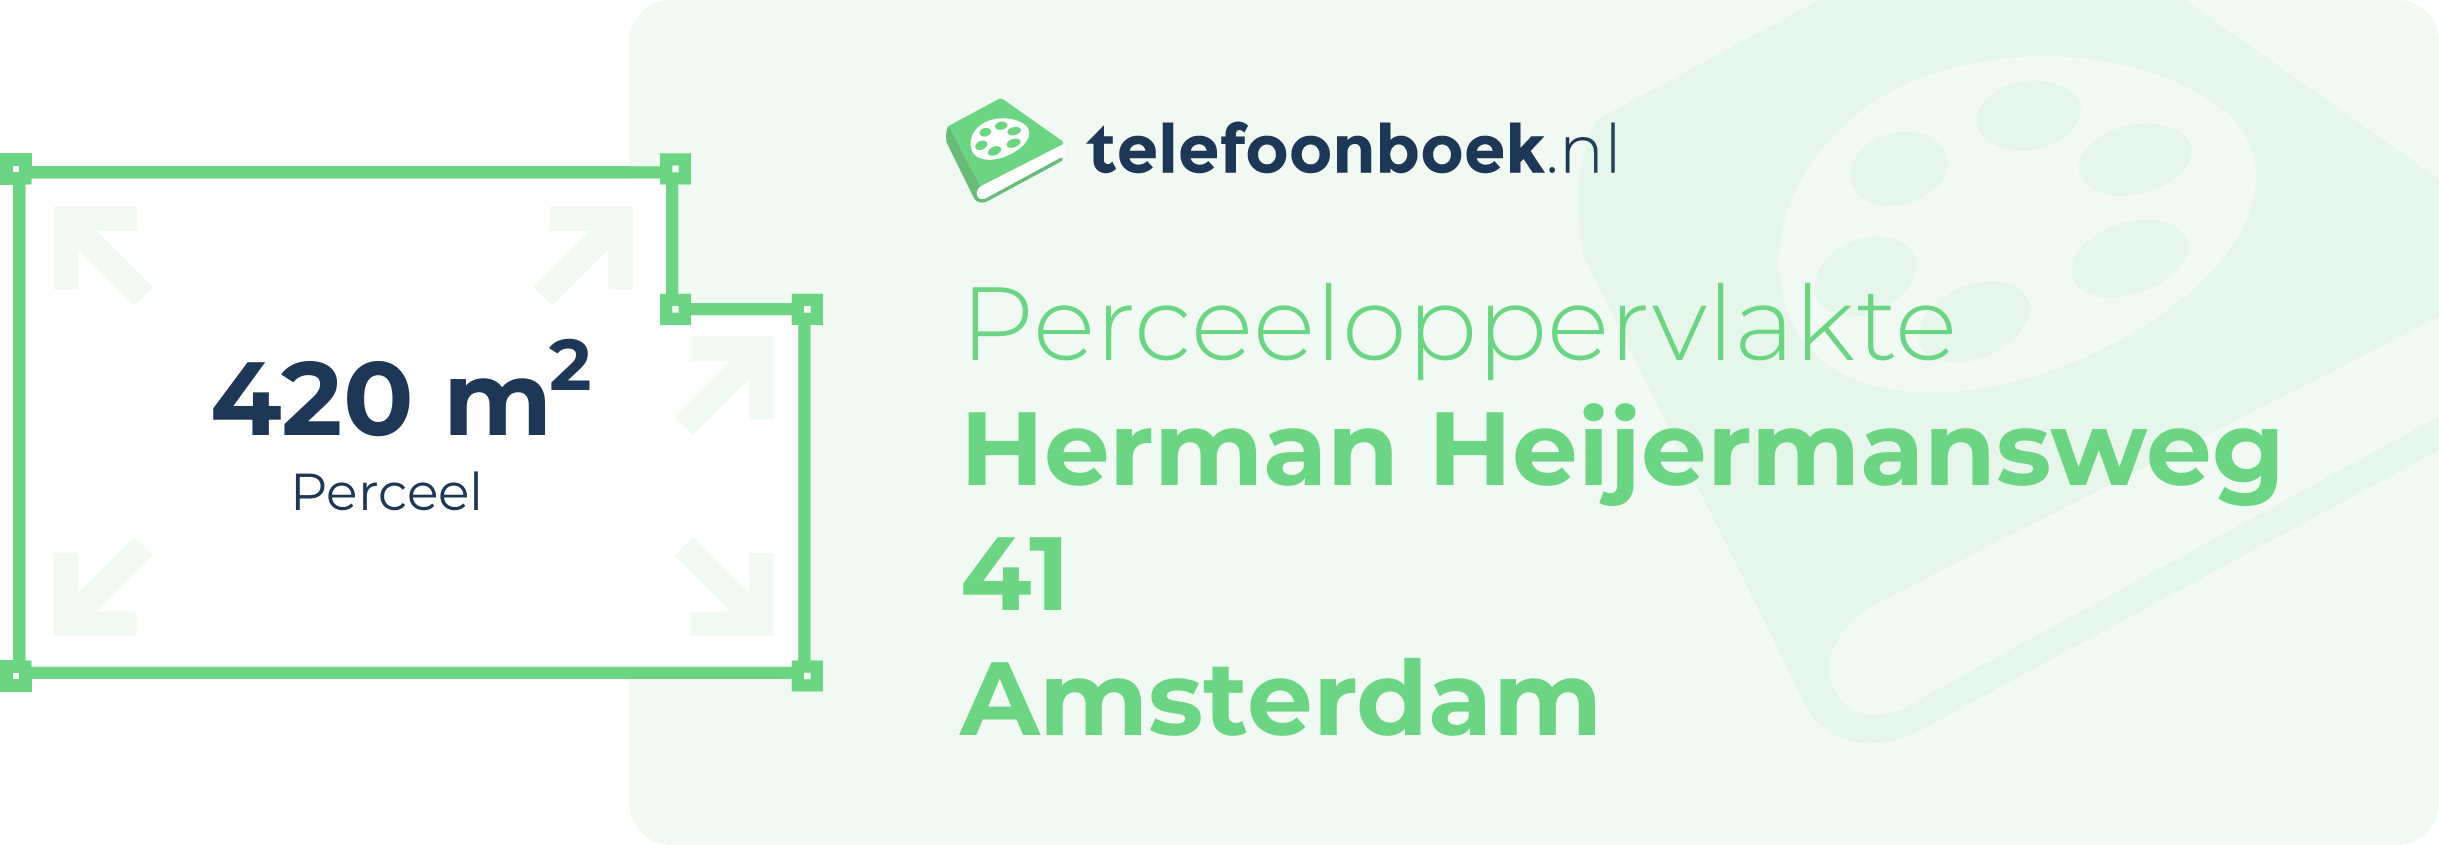 Perceeloppervlakte Herman Heijermansweg 41 Amsterdam